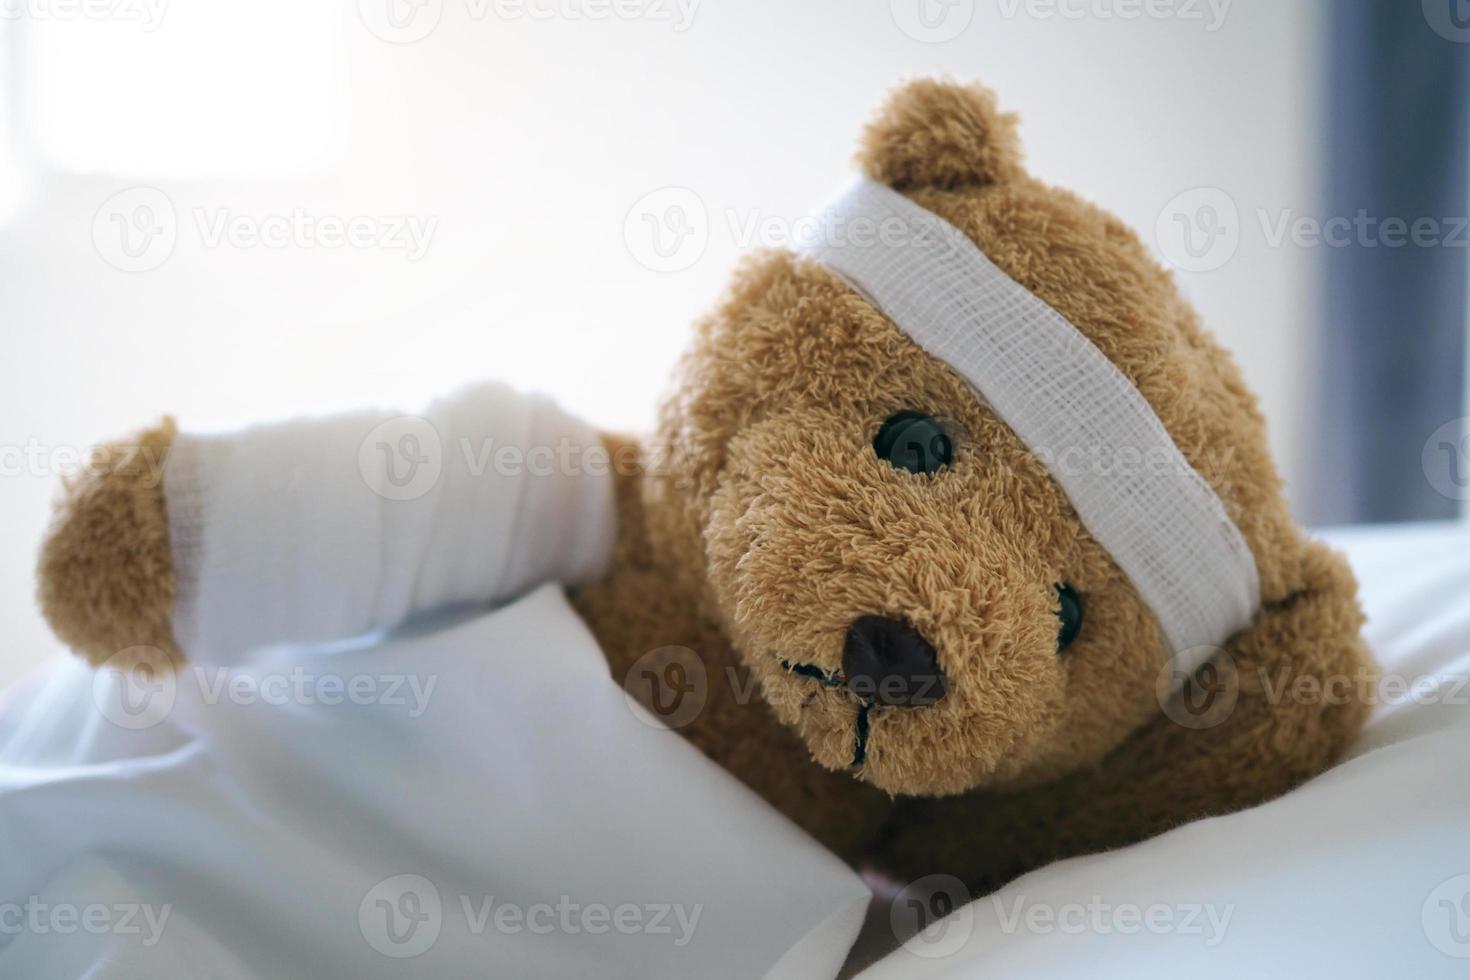 oso de peluche acostado enfermo en la cama con una diadema y un paño cubierto foto